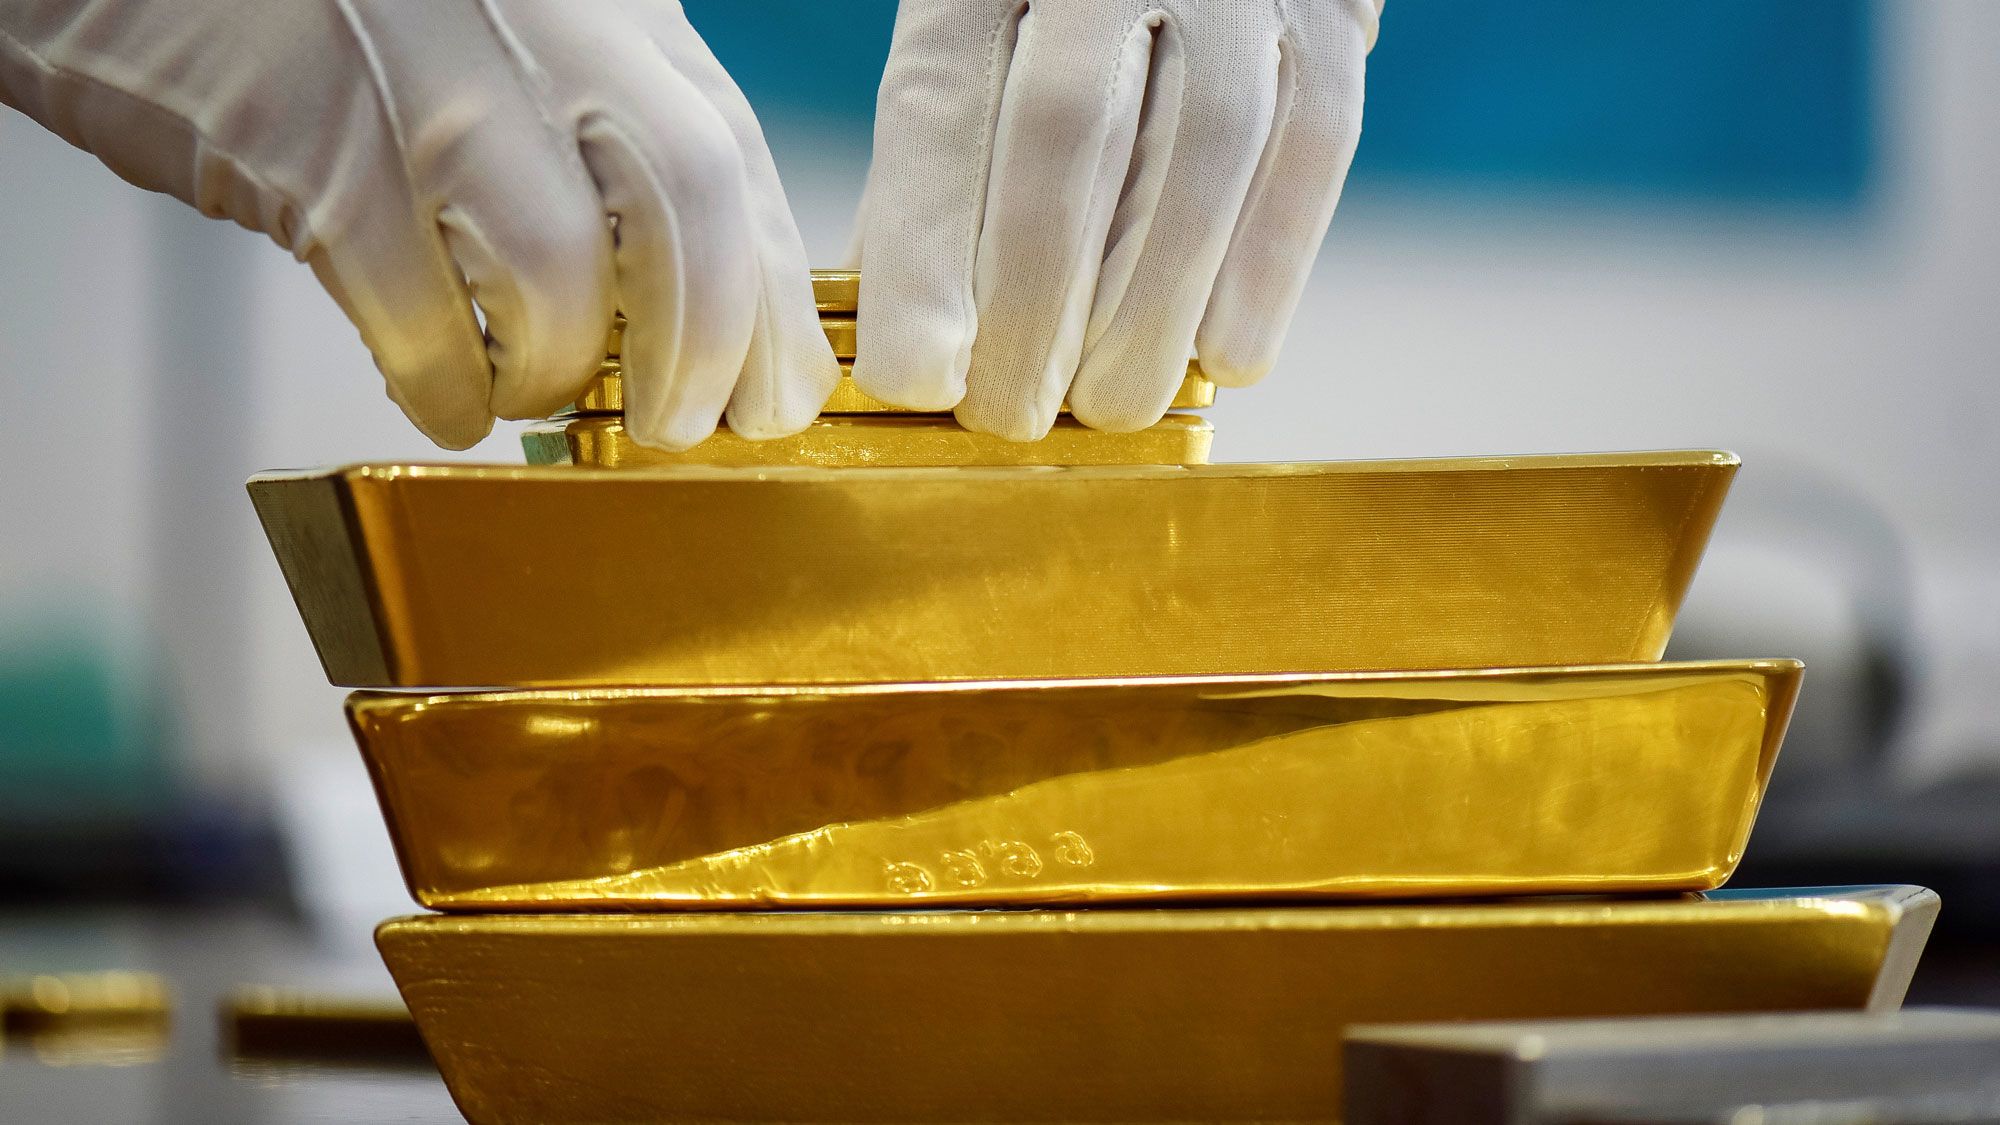  الذهب يرتفع مع ضعف بيانات الصين التي تؤثر على شهية المخاطرة